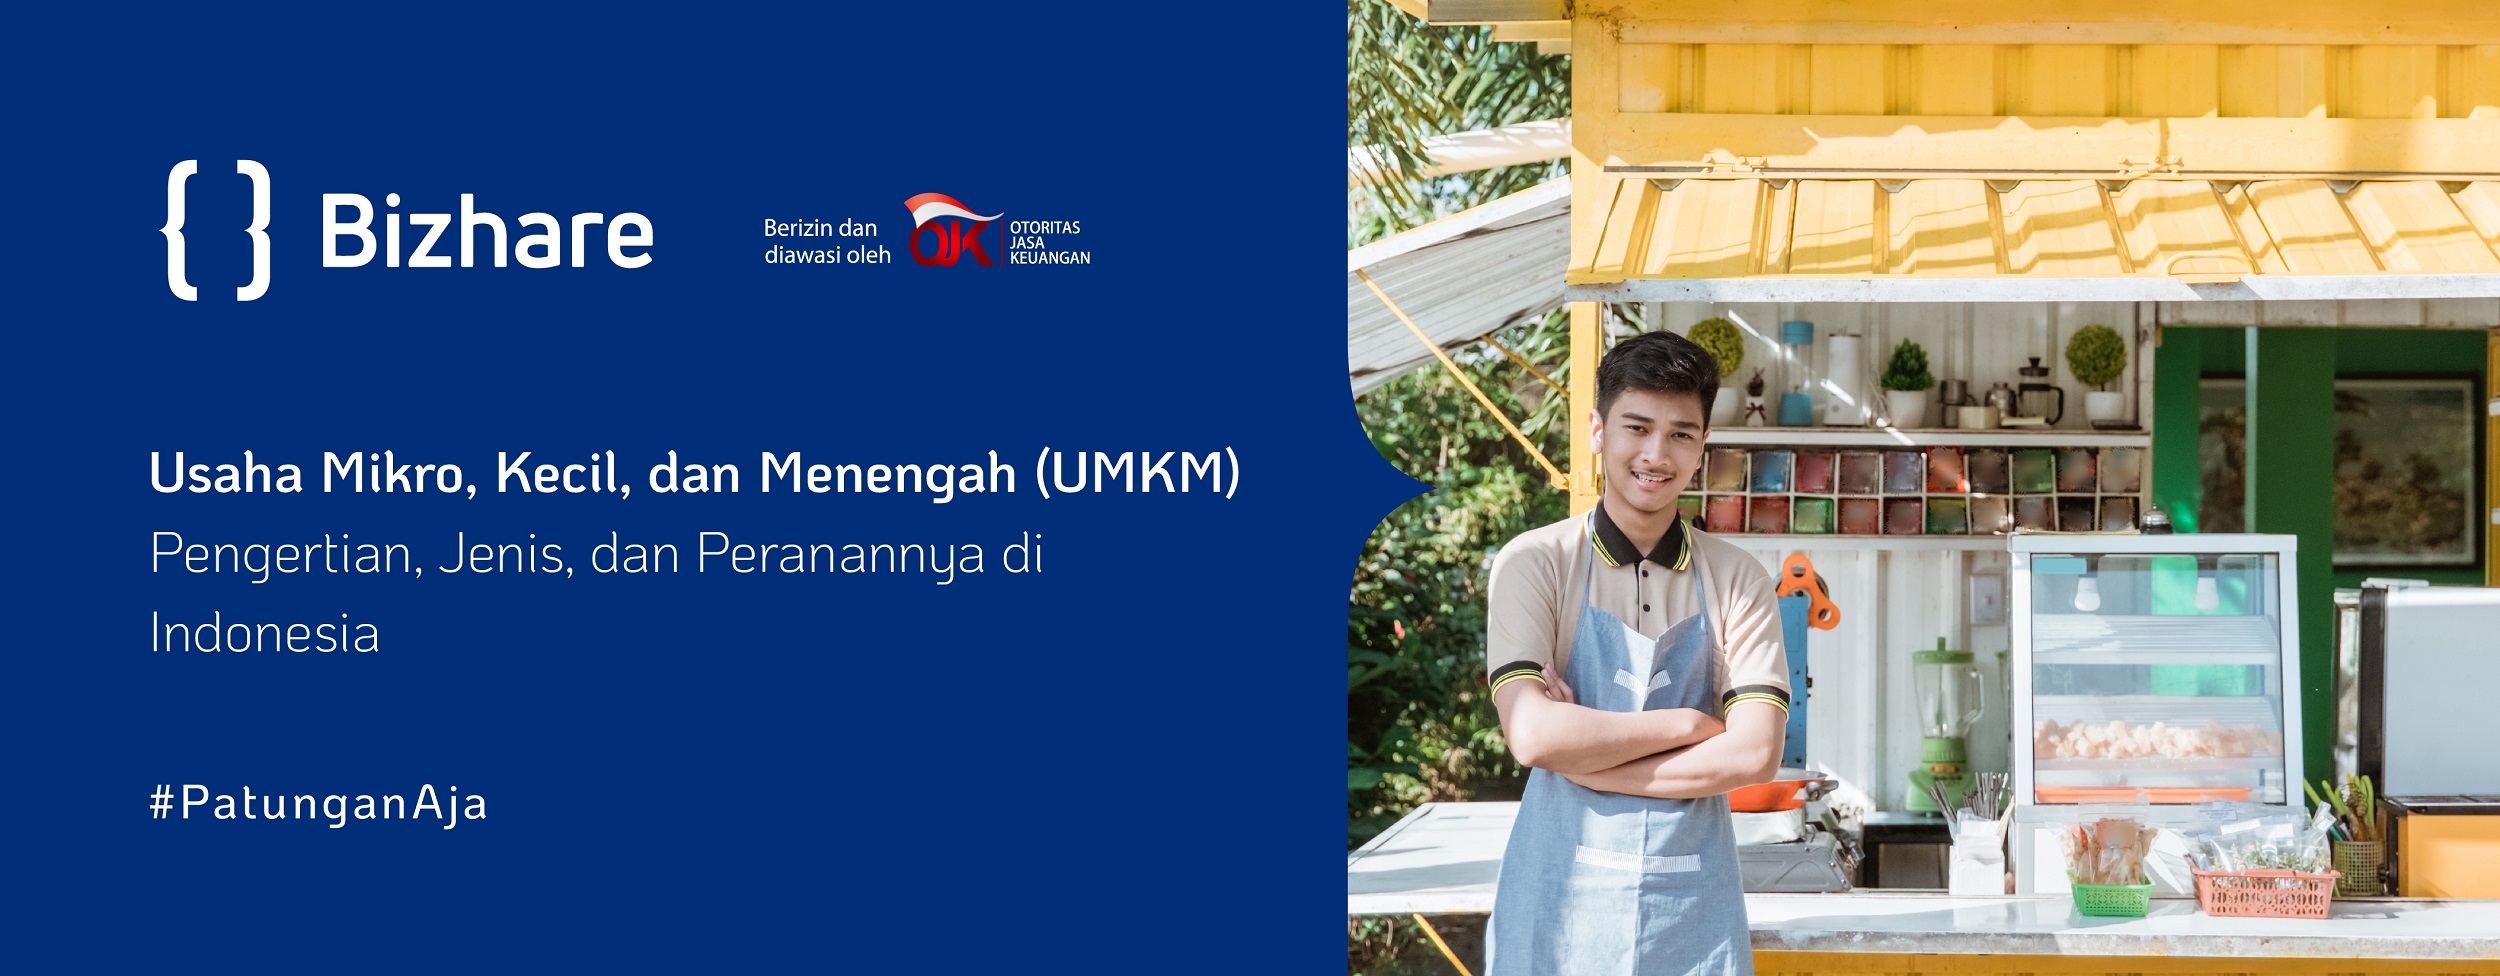 UMKM: Pengertian, Jenis, dan Peranannya di Indonesia